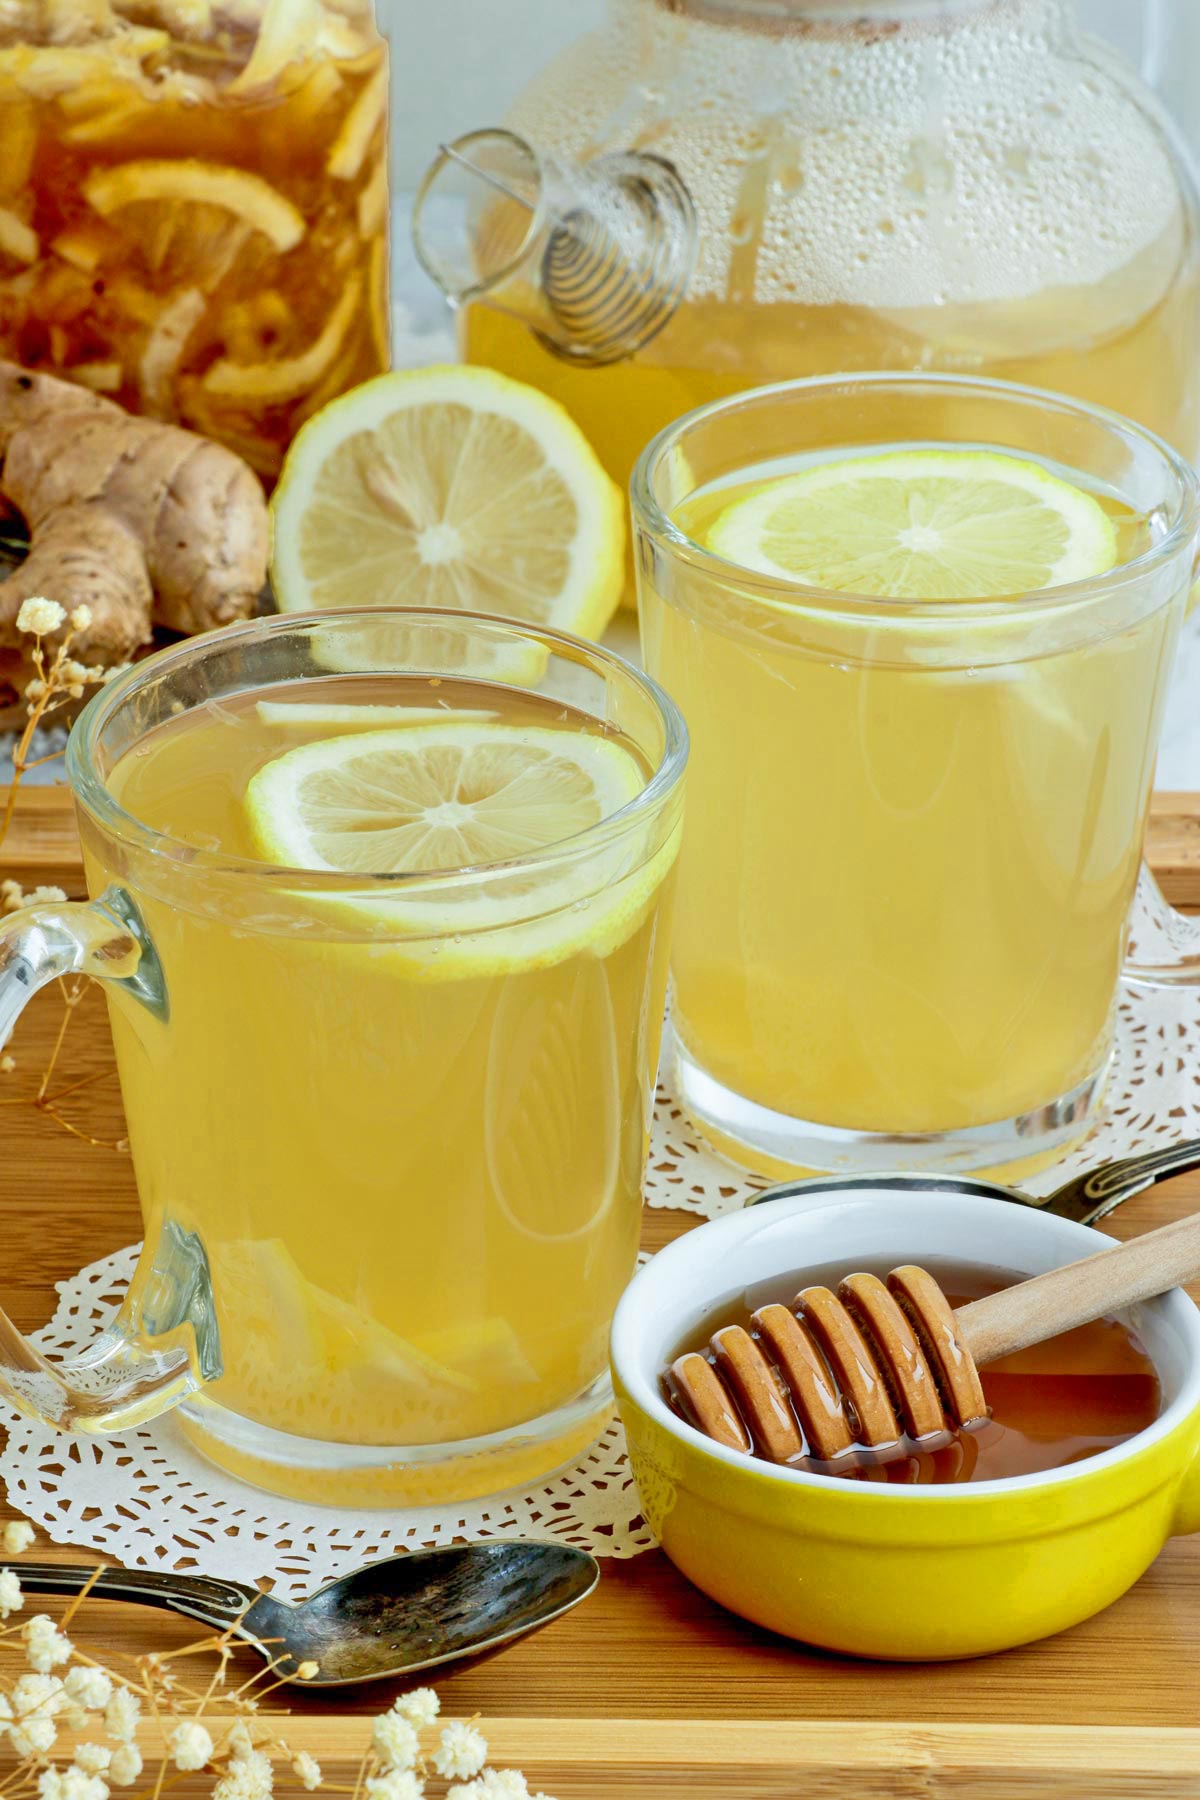 Immune boosting Homemade Honey Lemon Ginger Tea.